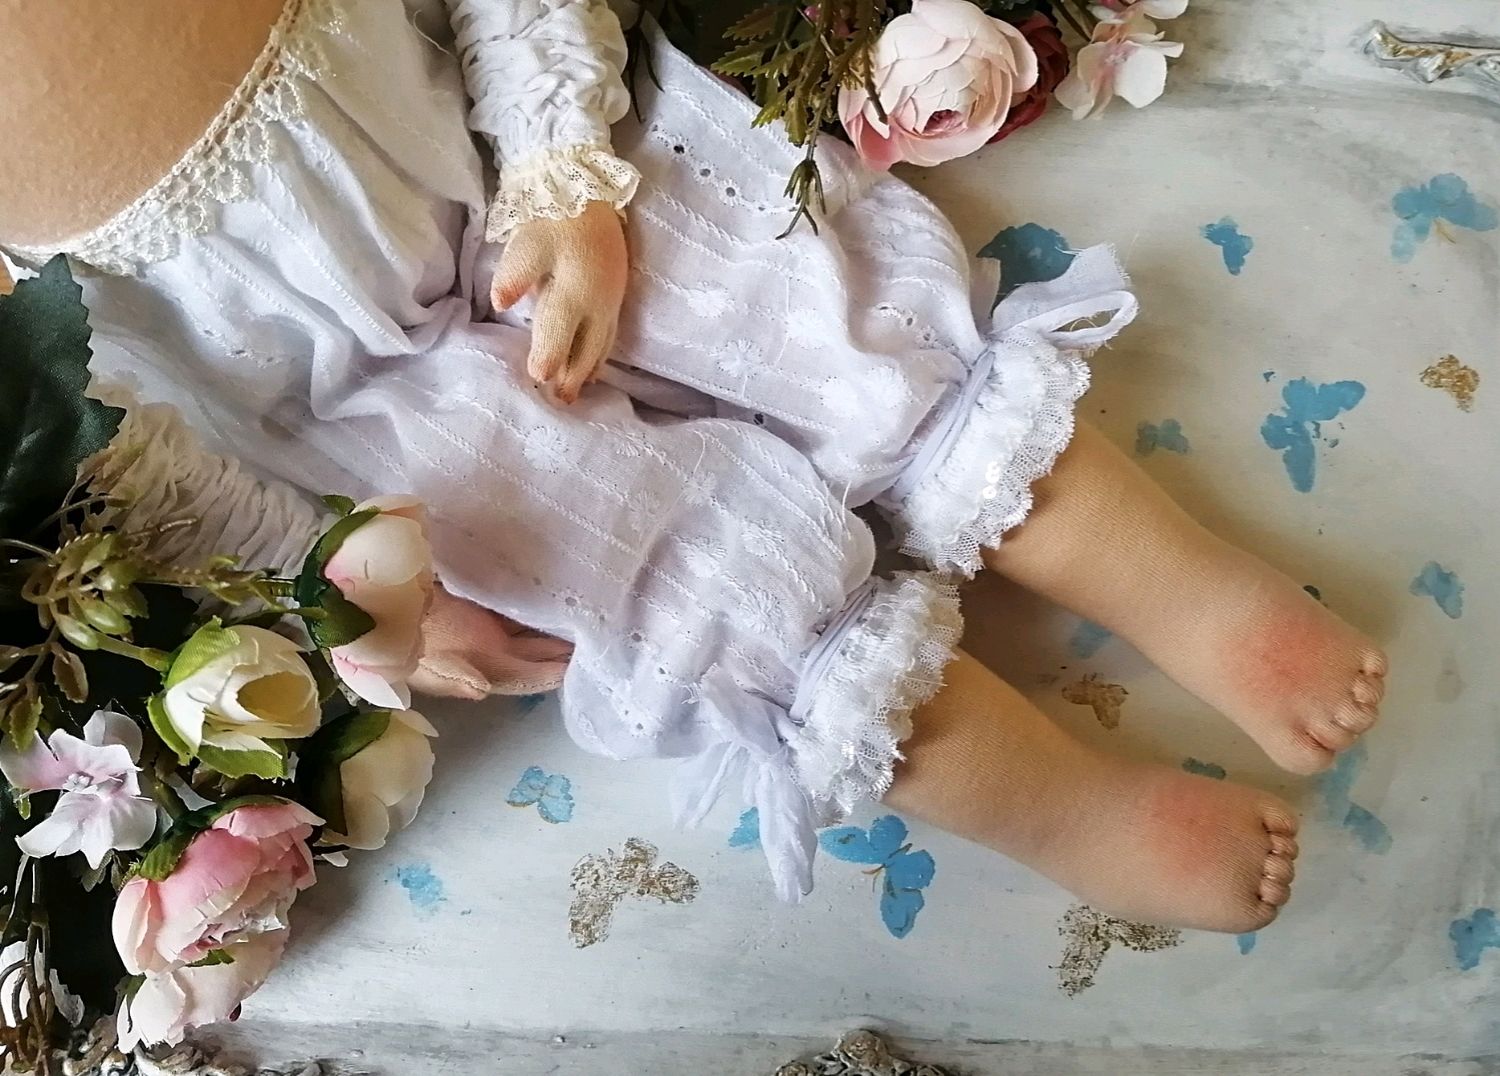 Купить куклу калуга. Куклы текстильные будуарные. Текстильная кукла 30 см в будуарном стиле. Куклы авито Калуга.